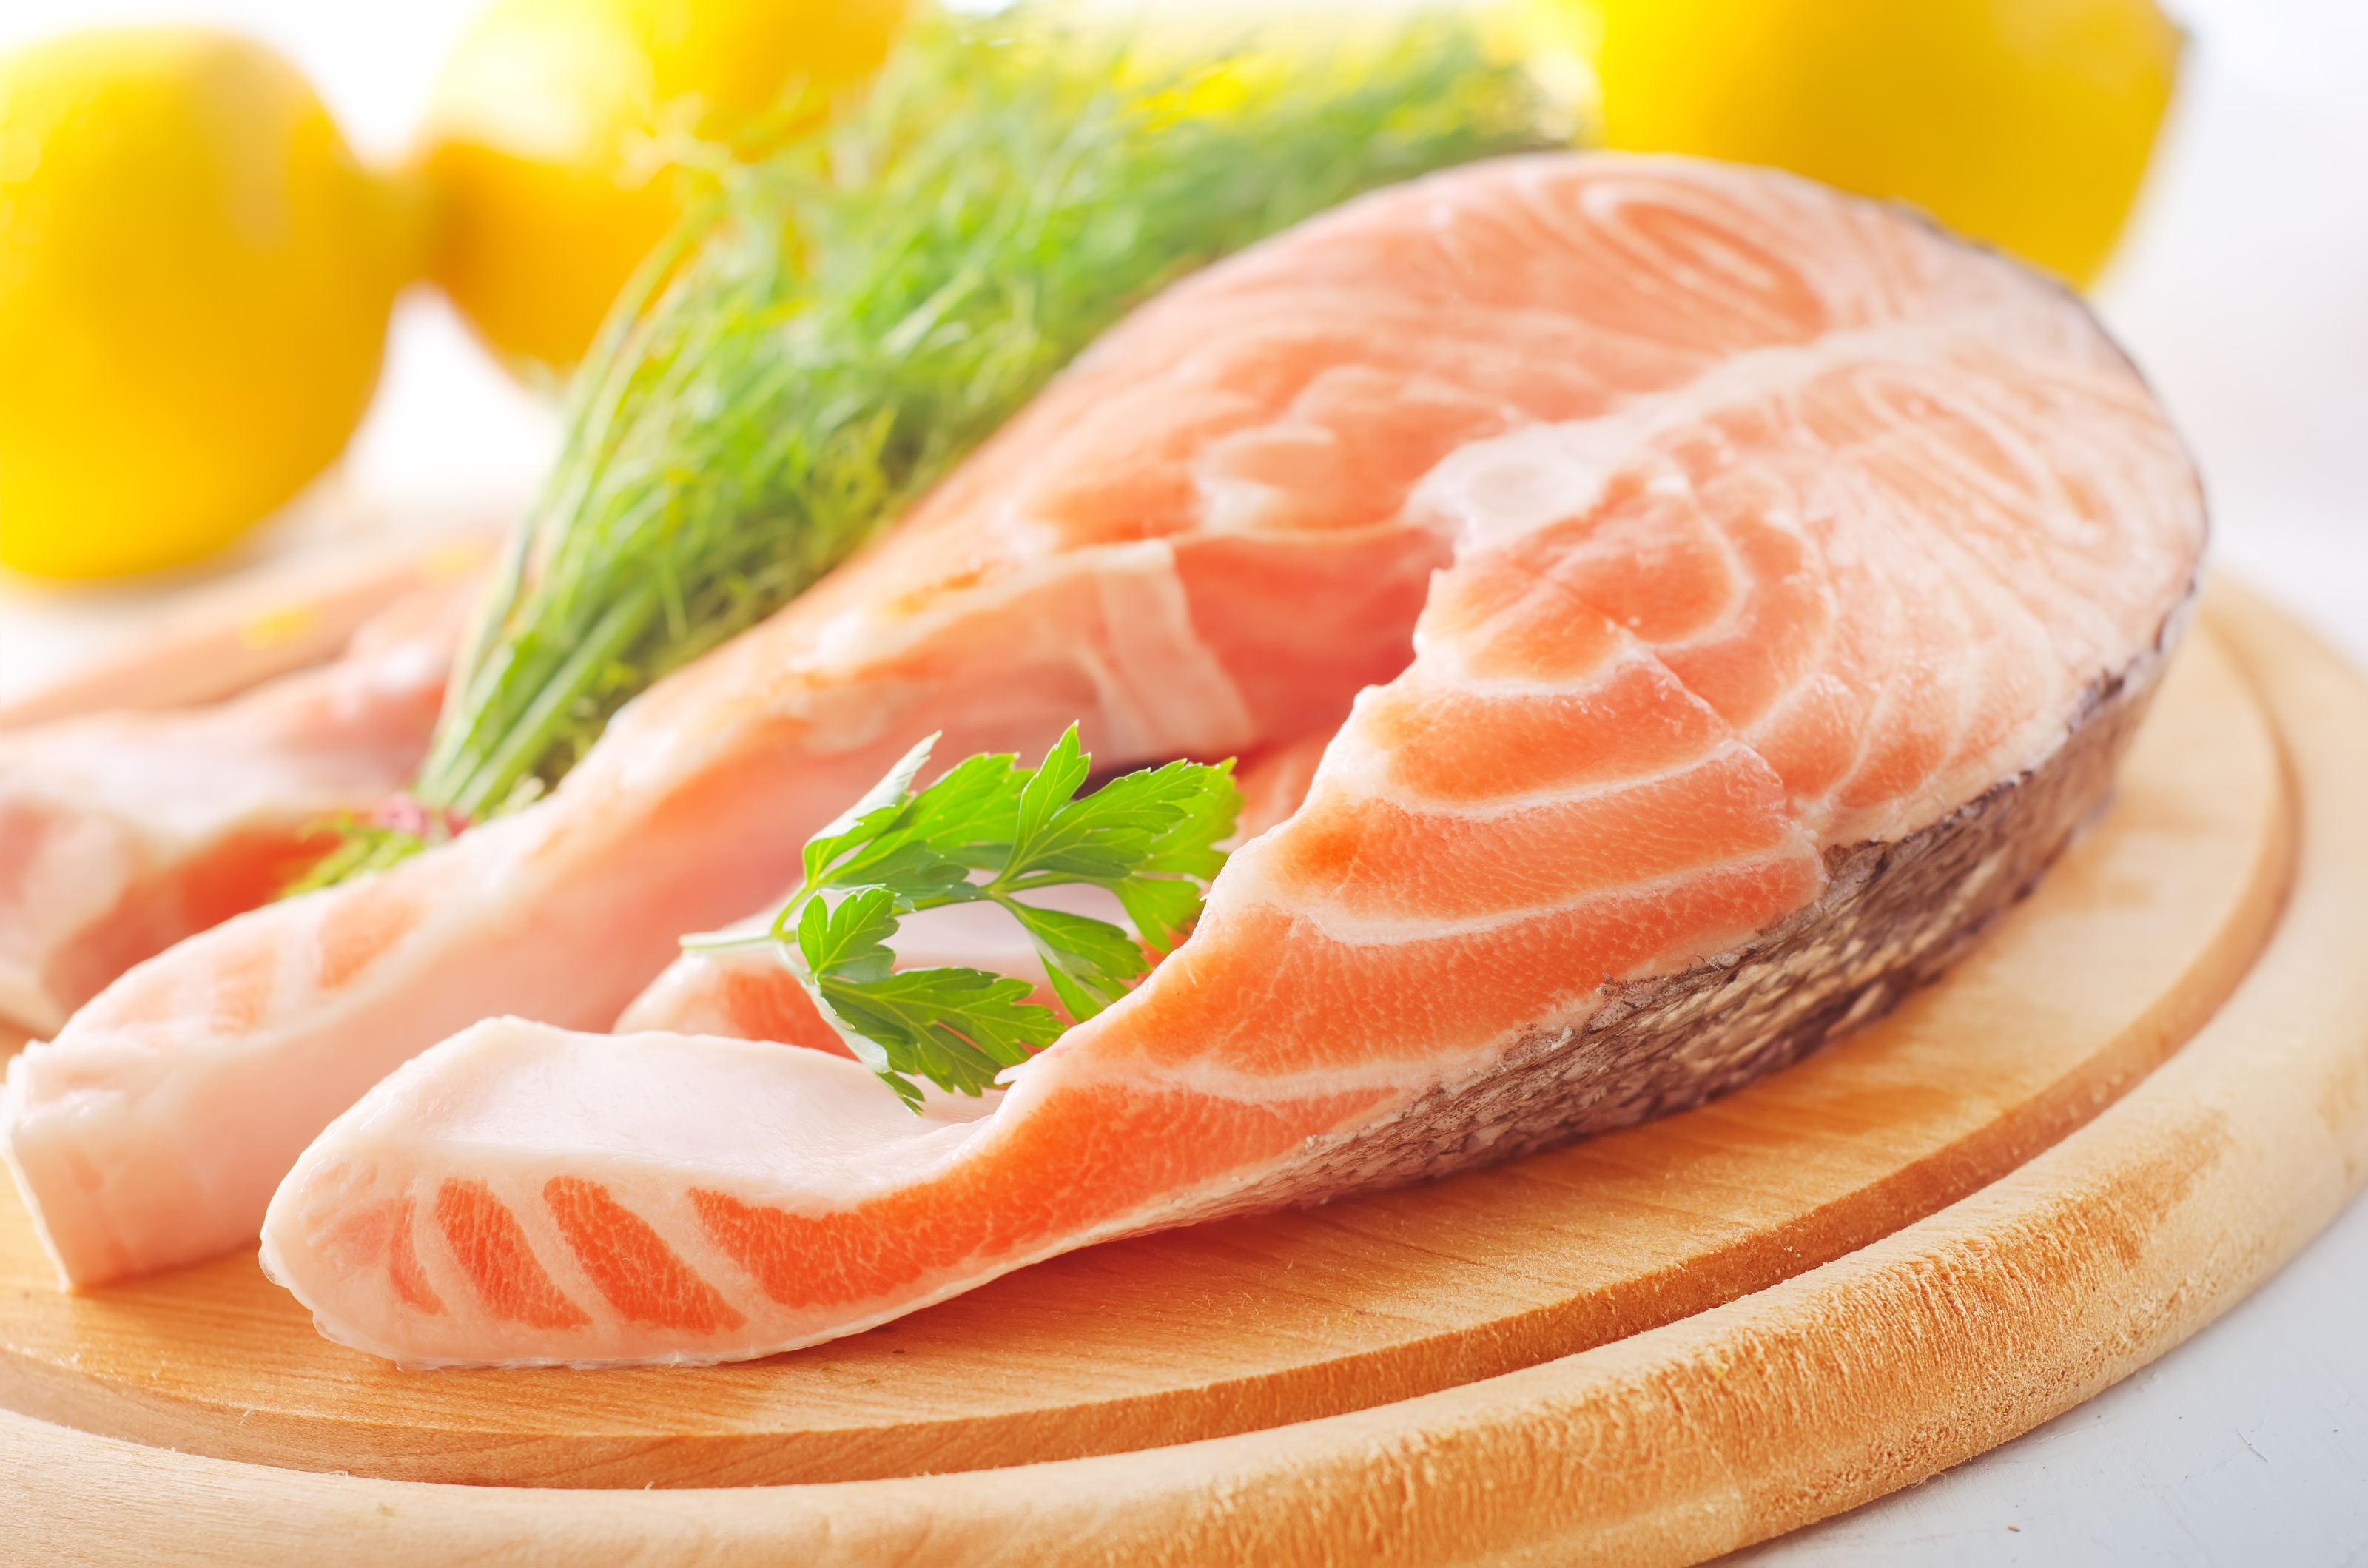 Ăn cá hồi có thể giúp ngăn ngừa bệnh nha chu - Ảnh: Shutterstock